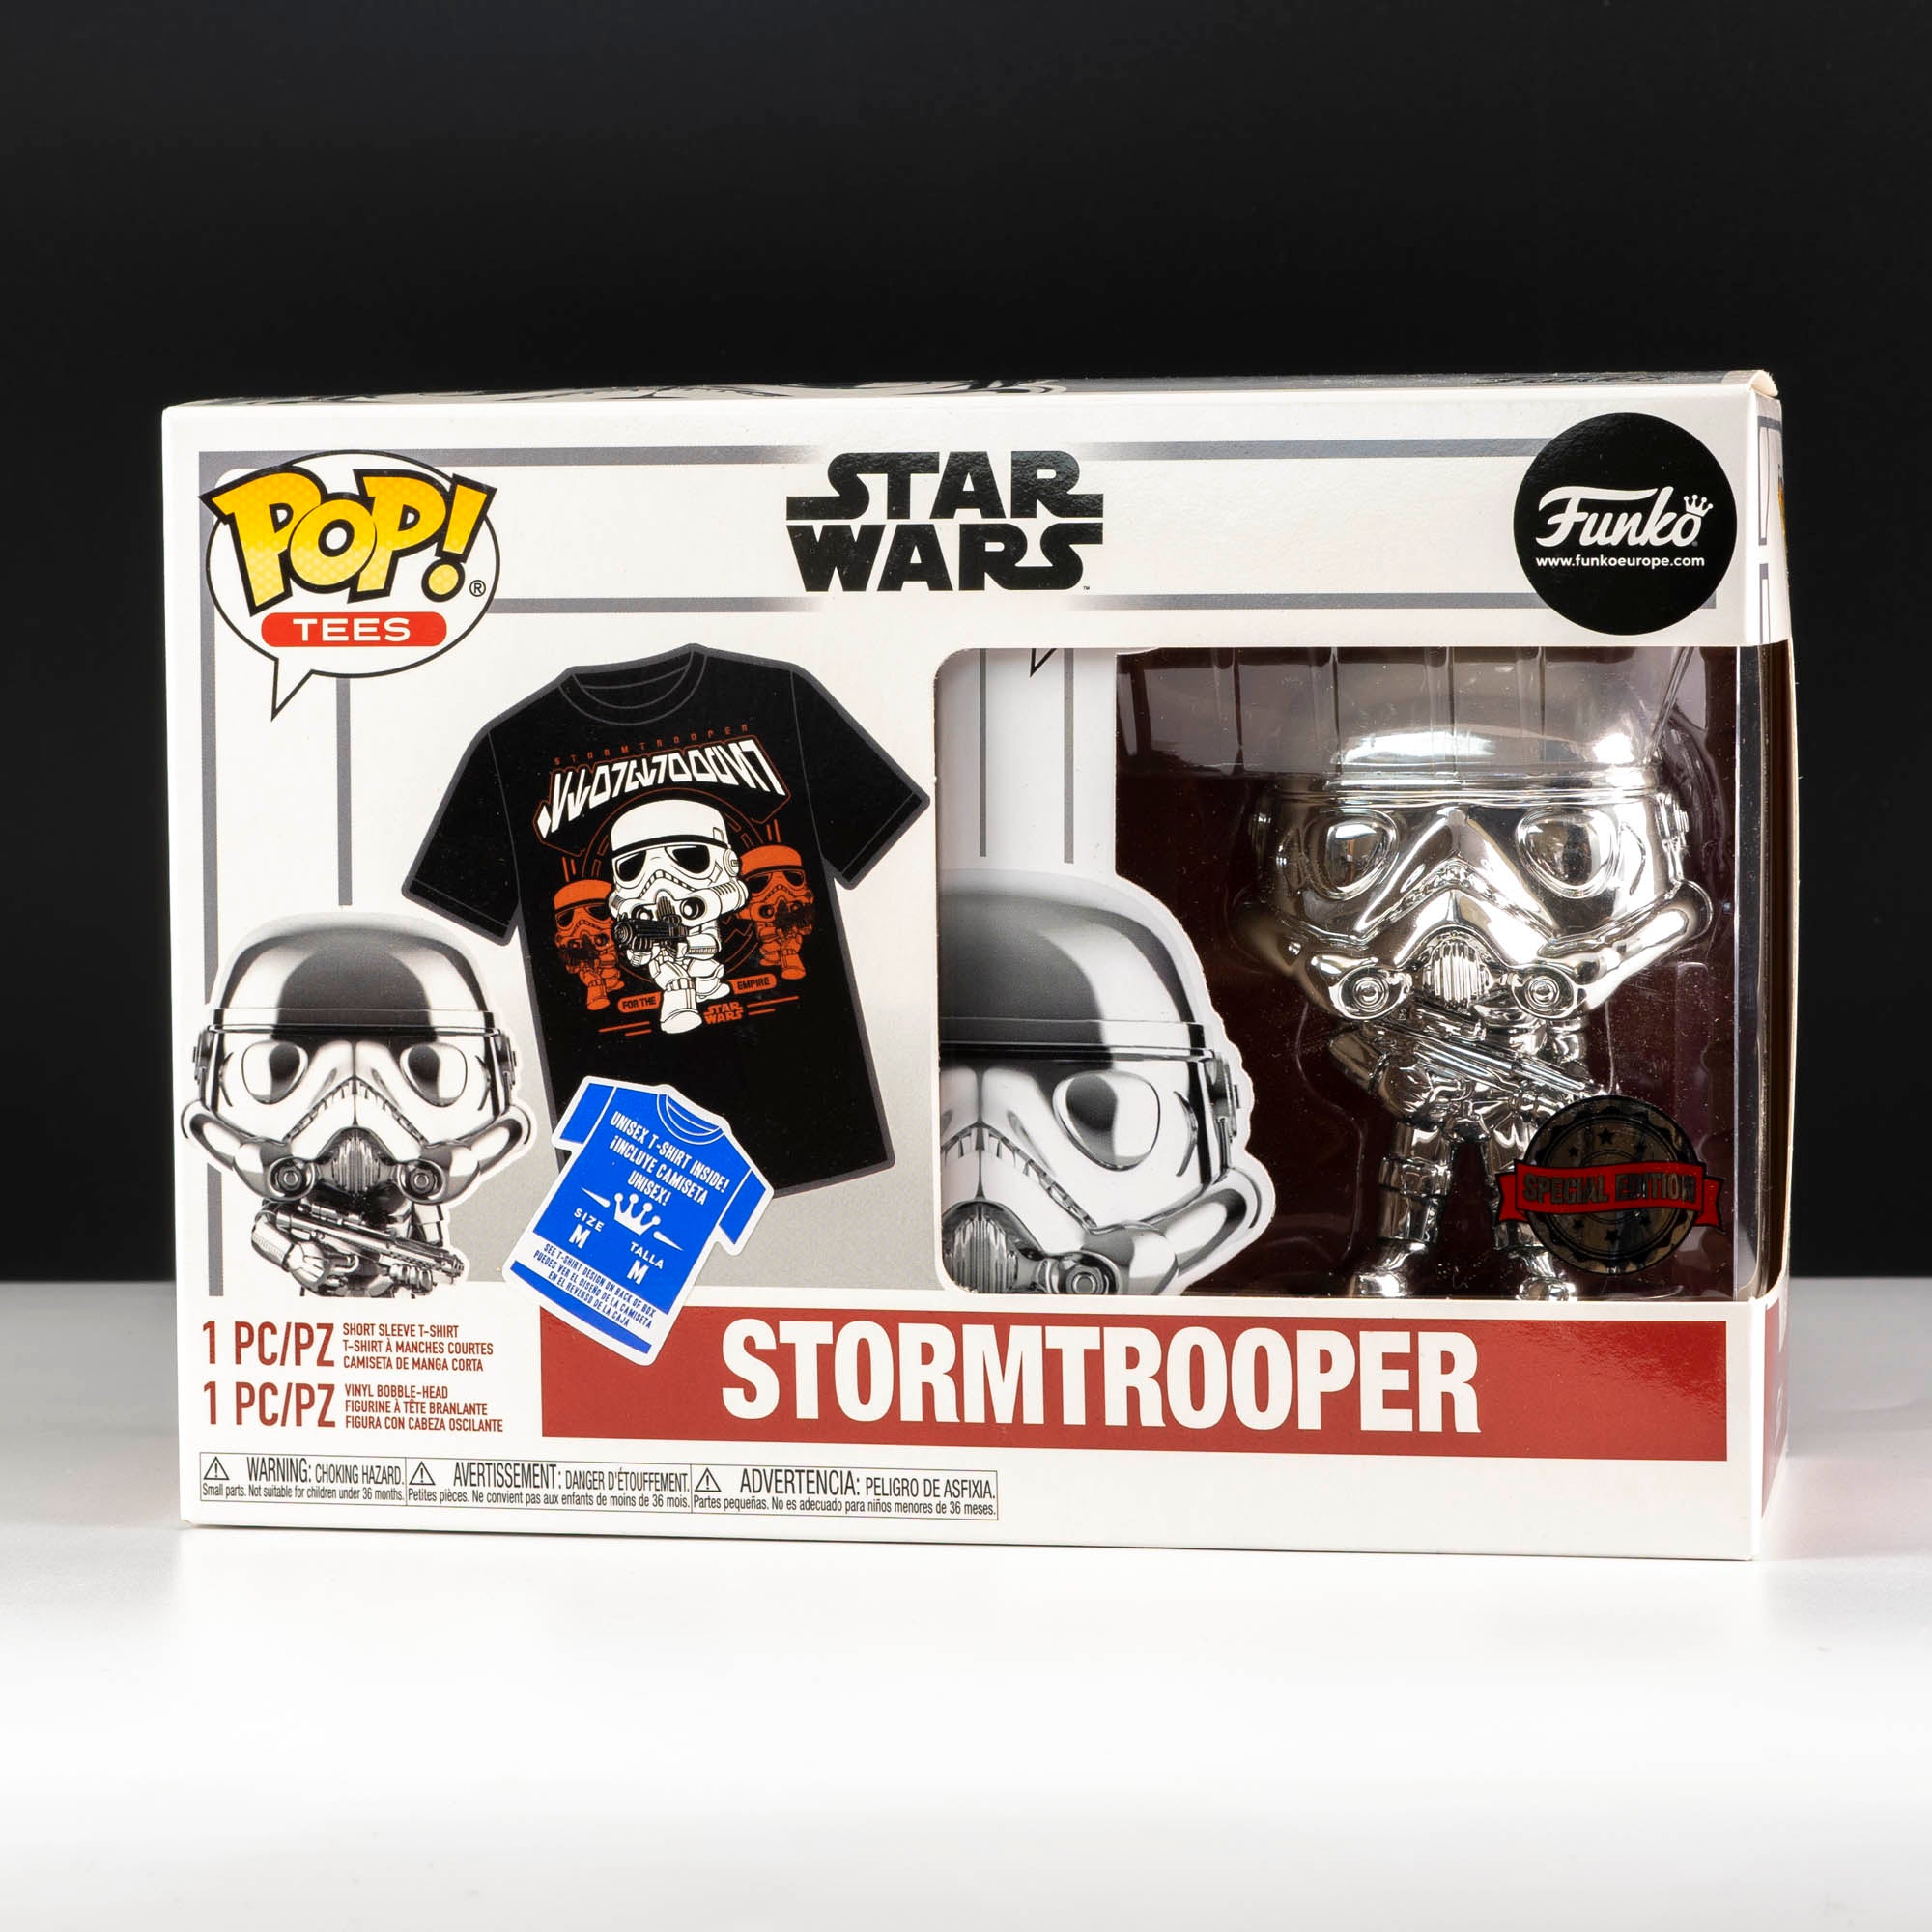 Star Wars Stormtrooper Pop! Vinyl and Tee Set